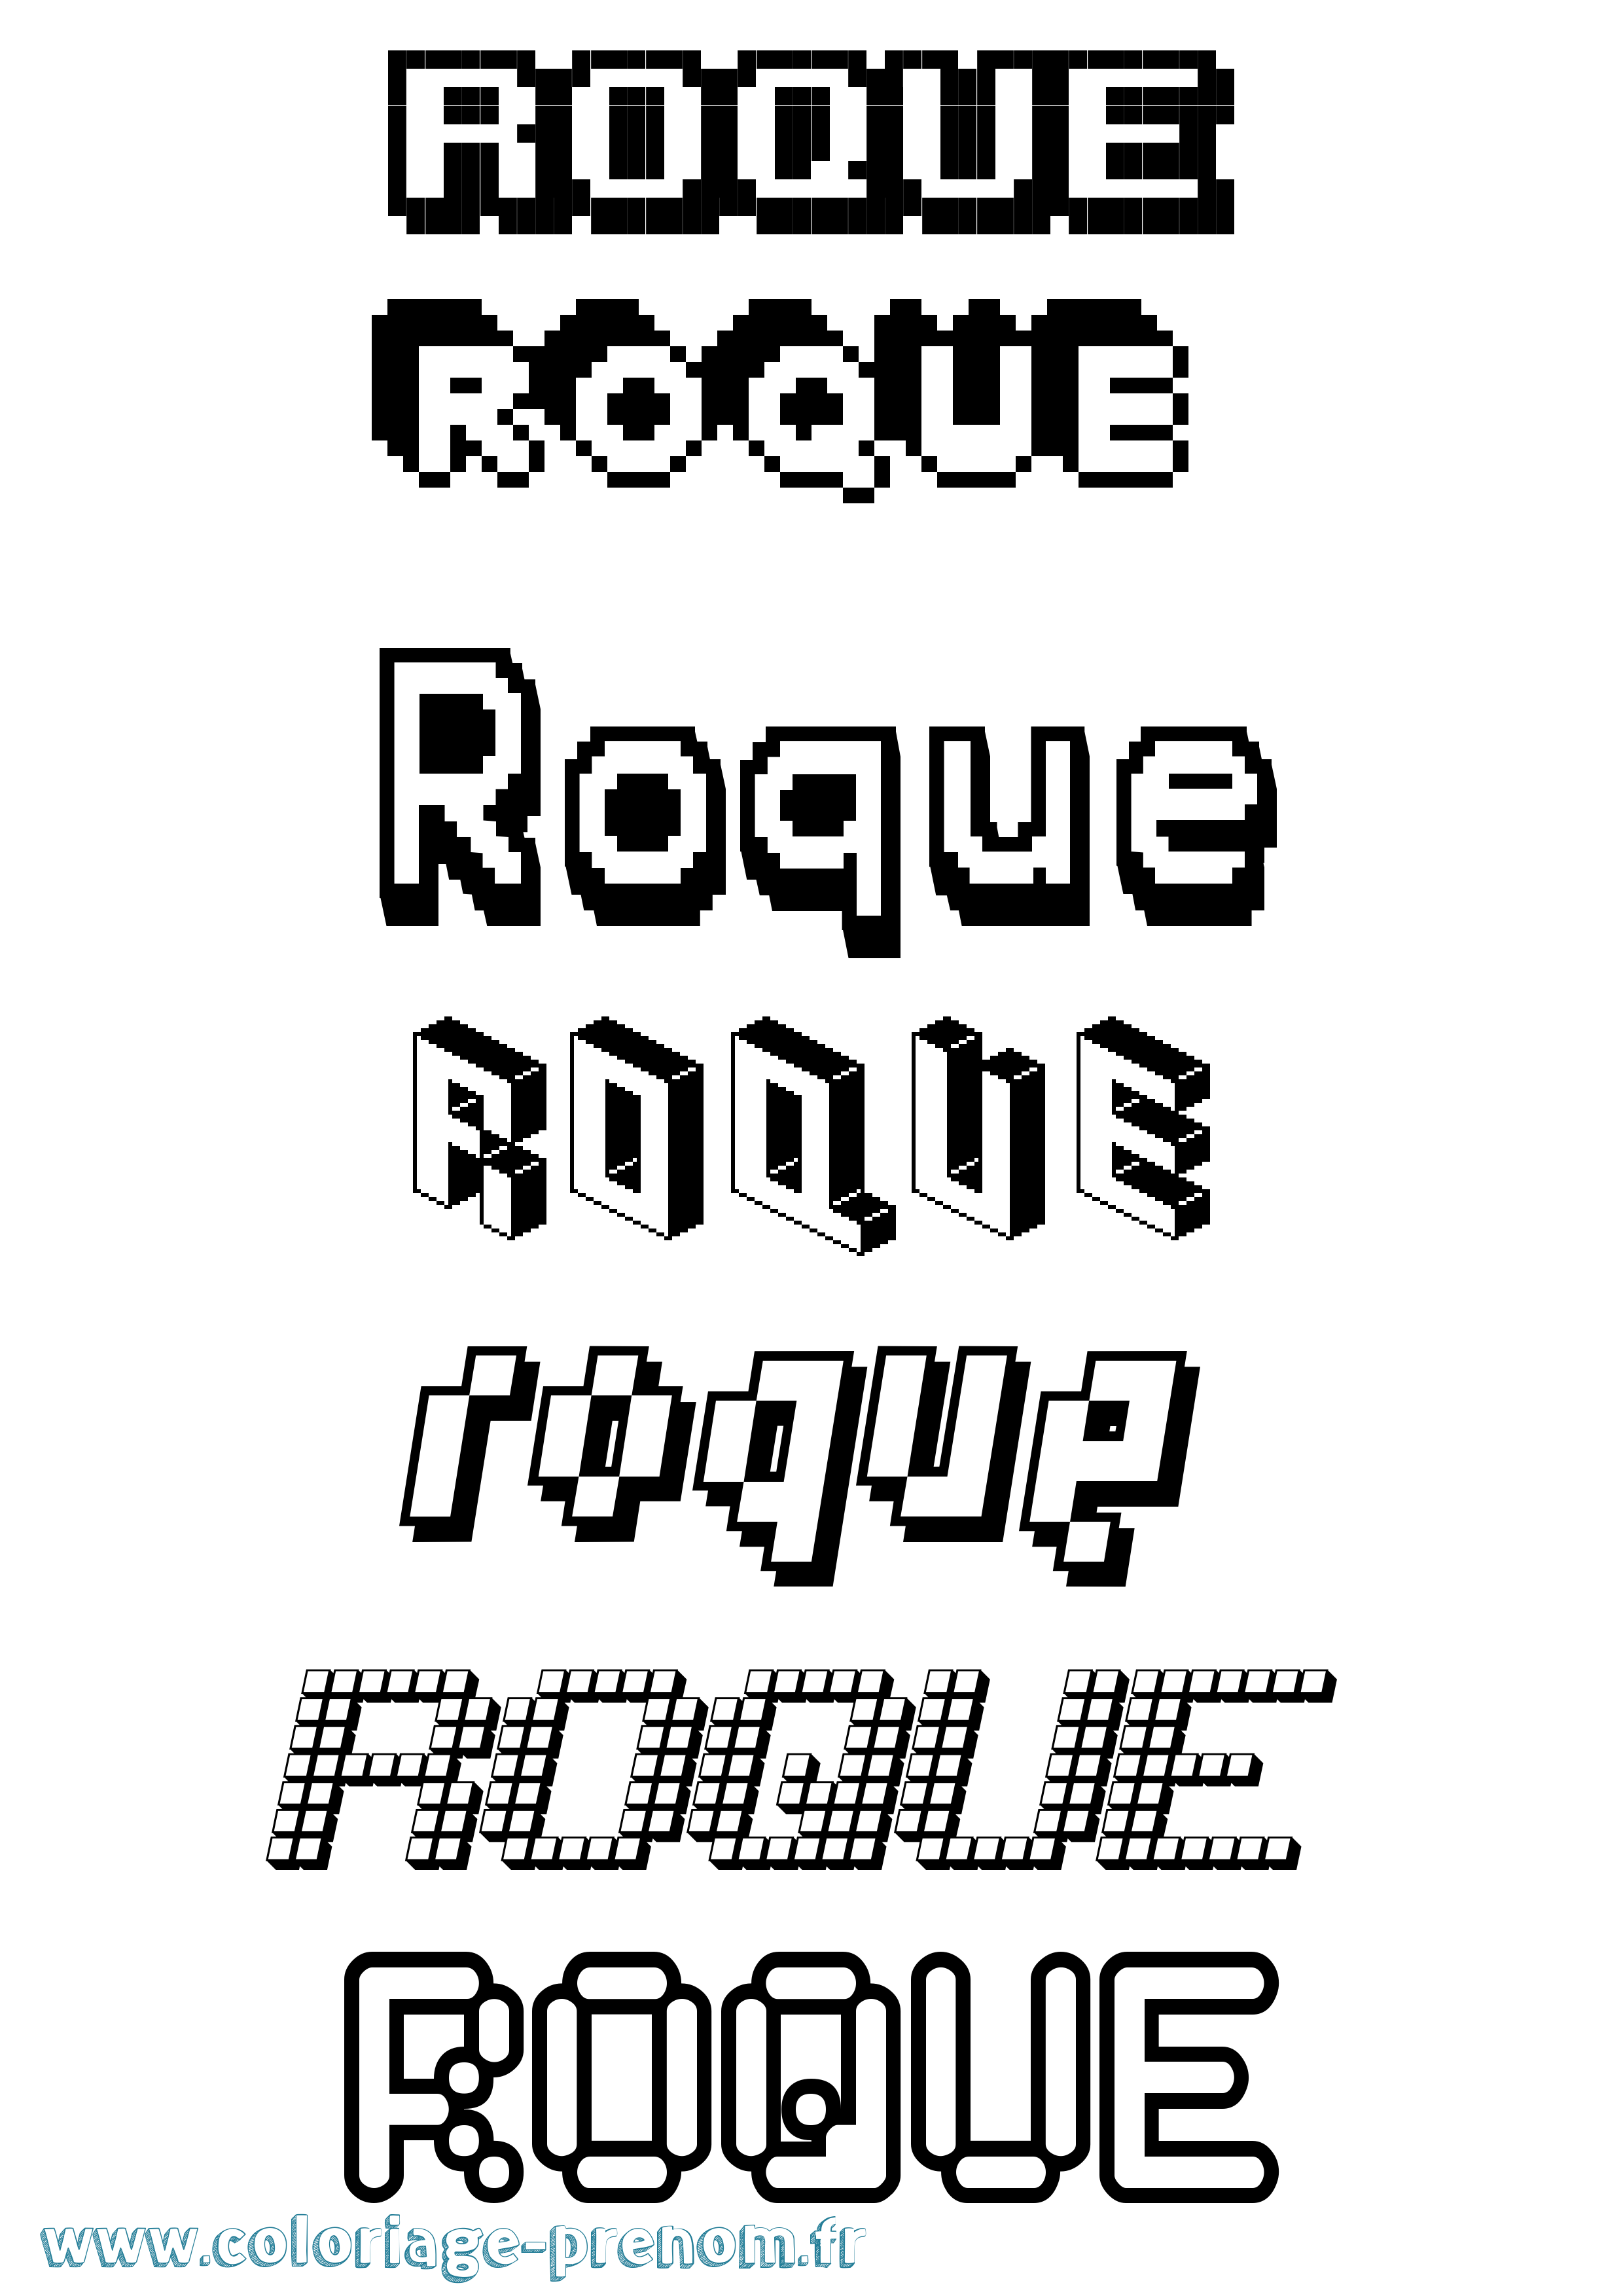 Coloriage prénom Roque Pixel